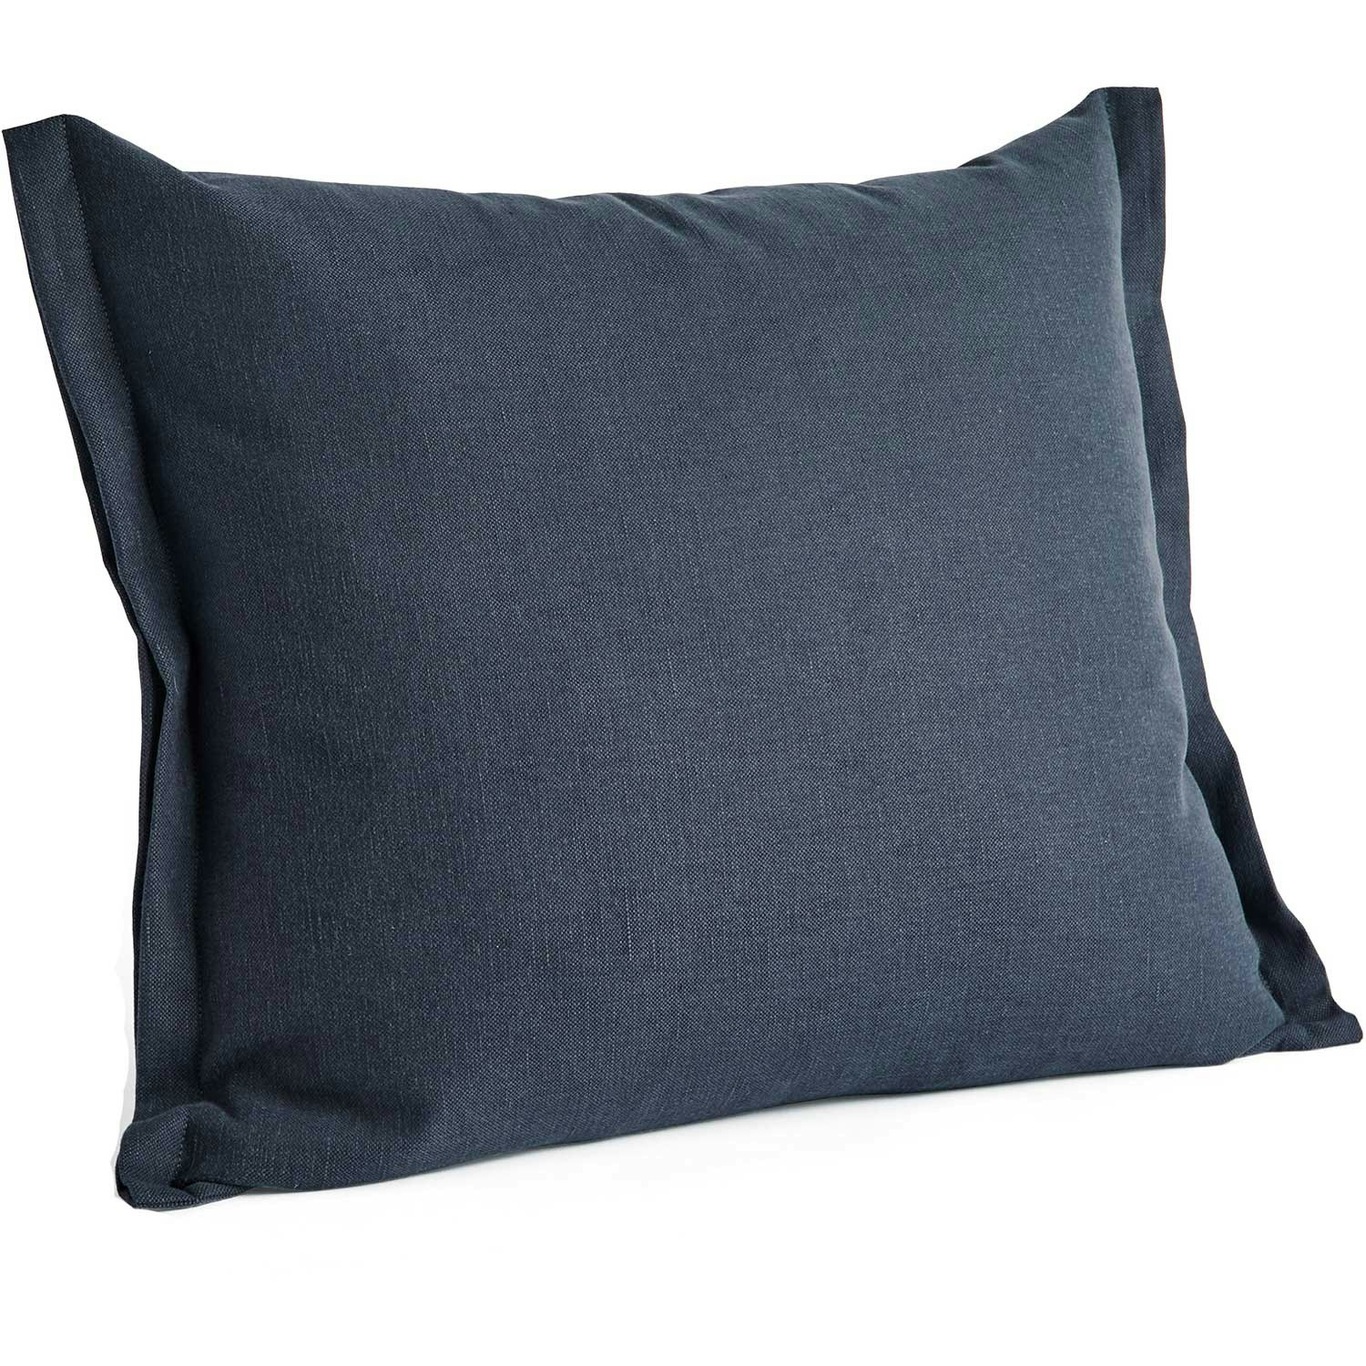 Plica Planar Cushion 55x60 cm, Navy